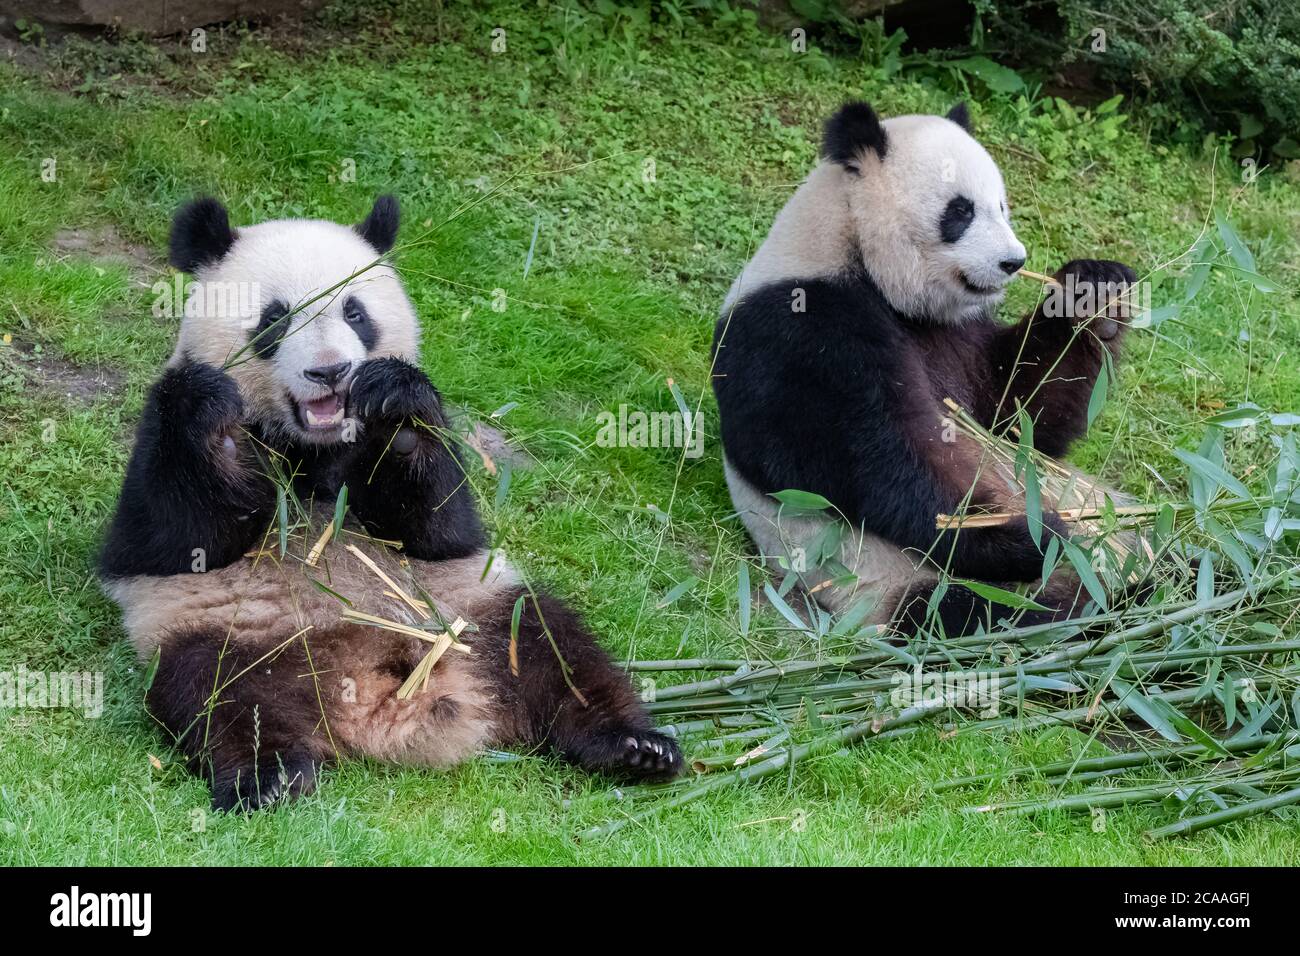 Giant Pandas Bear Pandas Baby Panda And His Mother Eating Bamboo Stock Photo Alamy